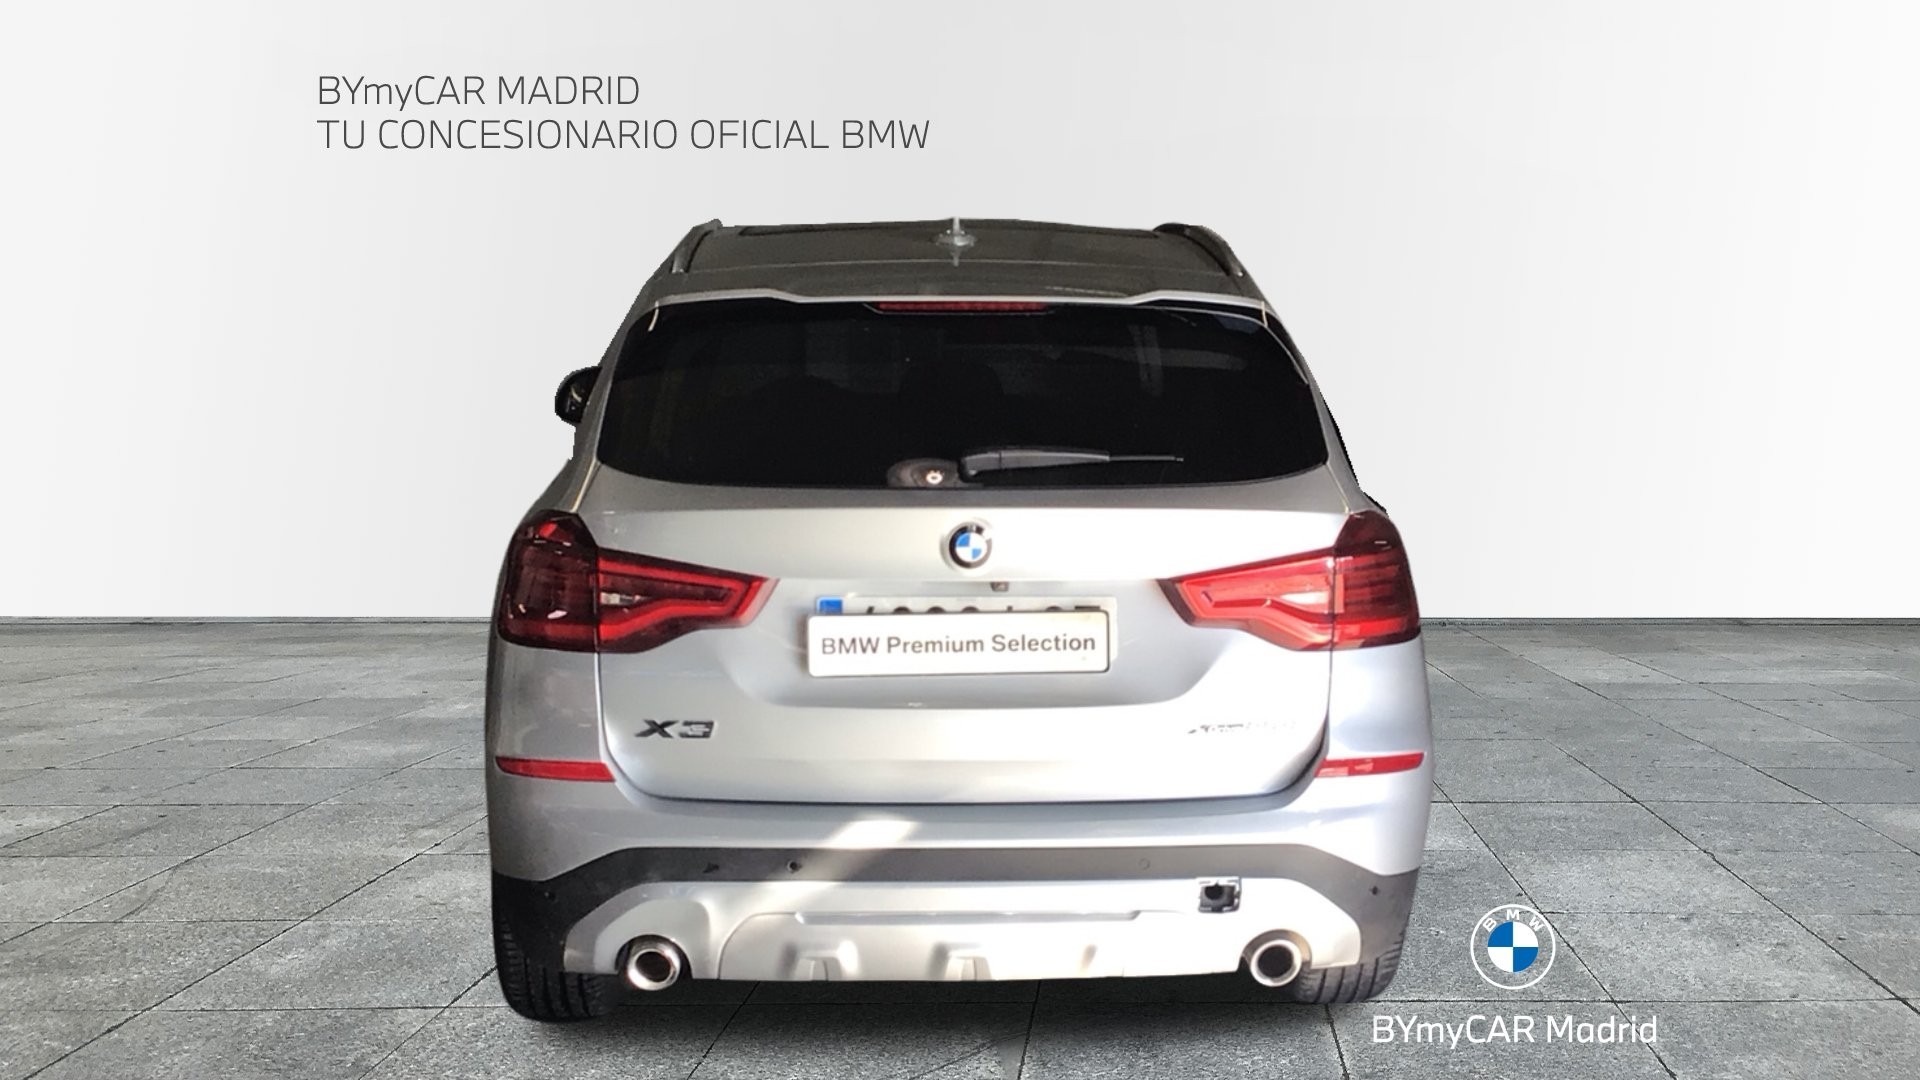 BMW X3 xDrive20d color Gris Plata. Año 2019. 140KW(190CV). Diésel. En concesionario BYmyCAR Madrid - Alcalá de Madrid